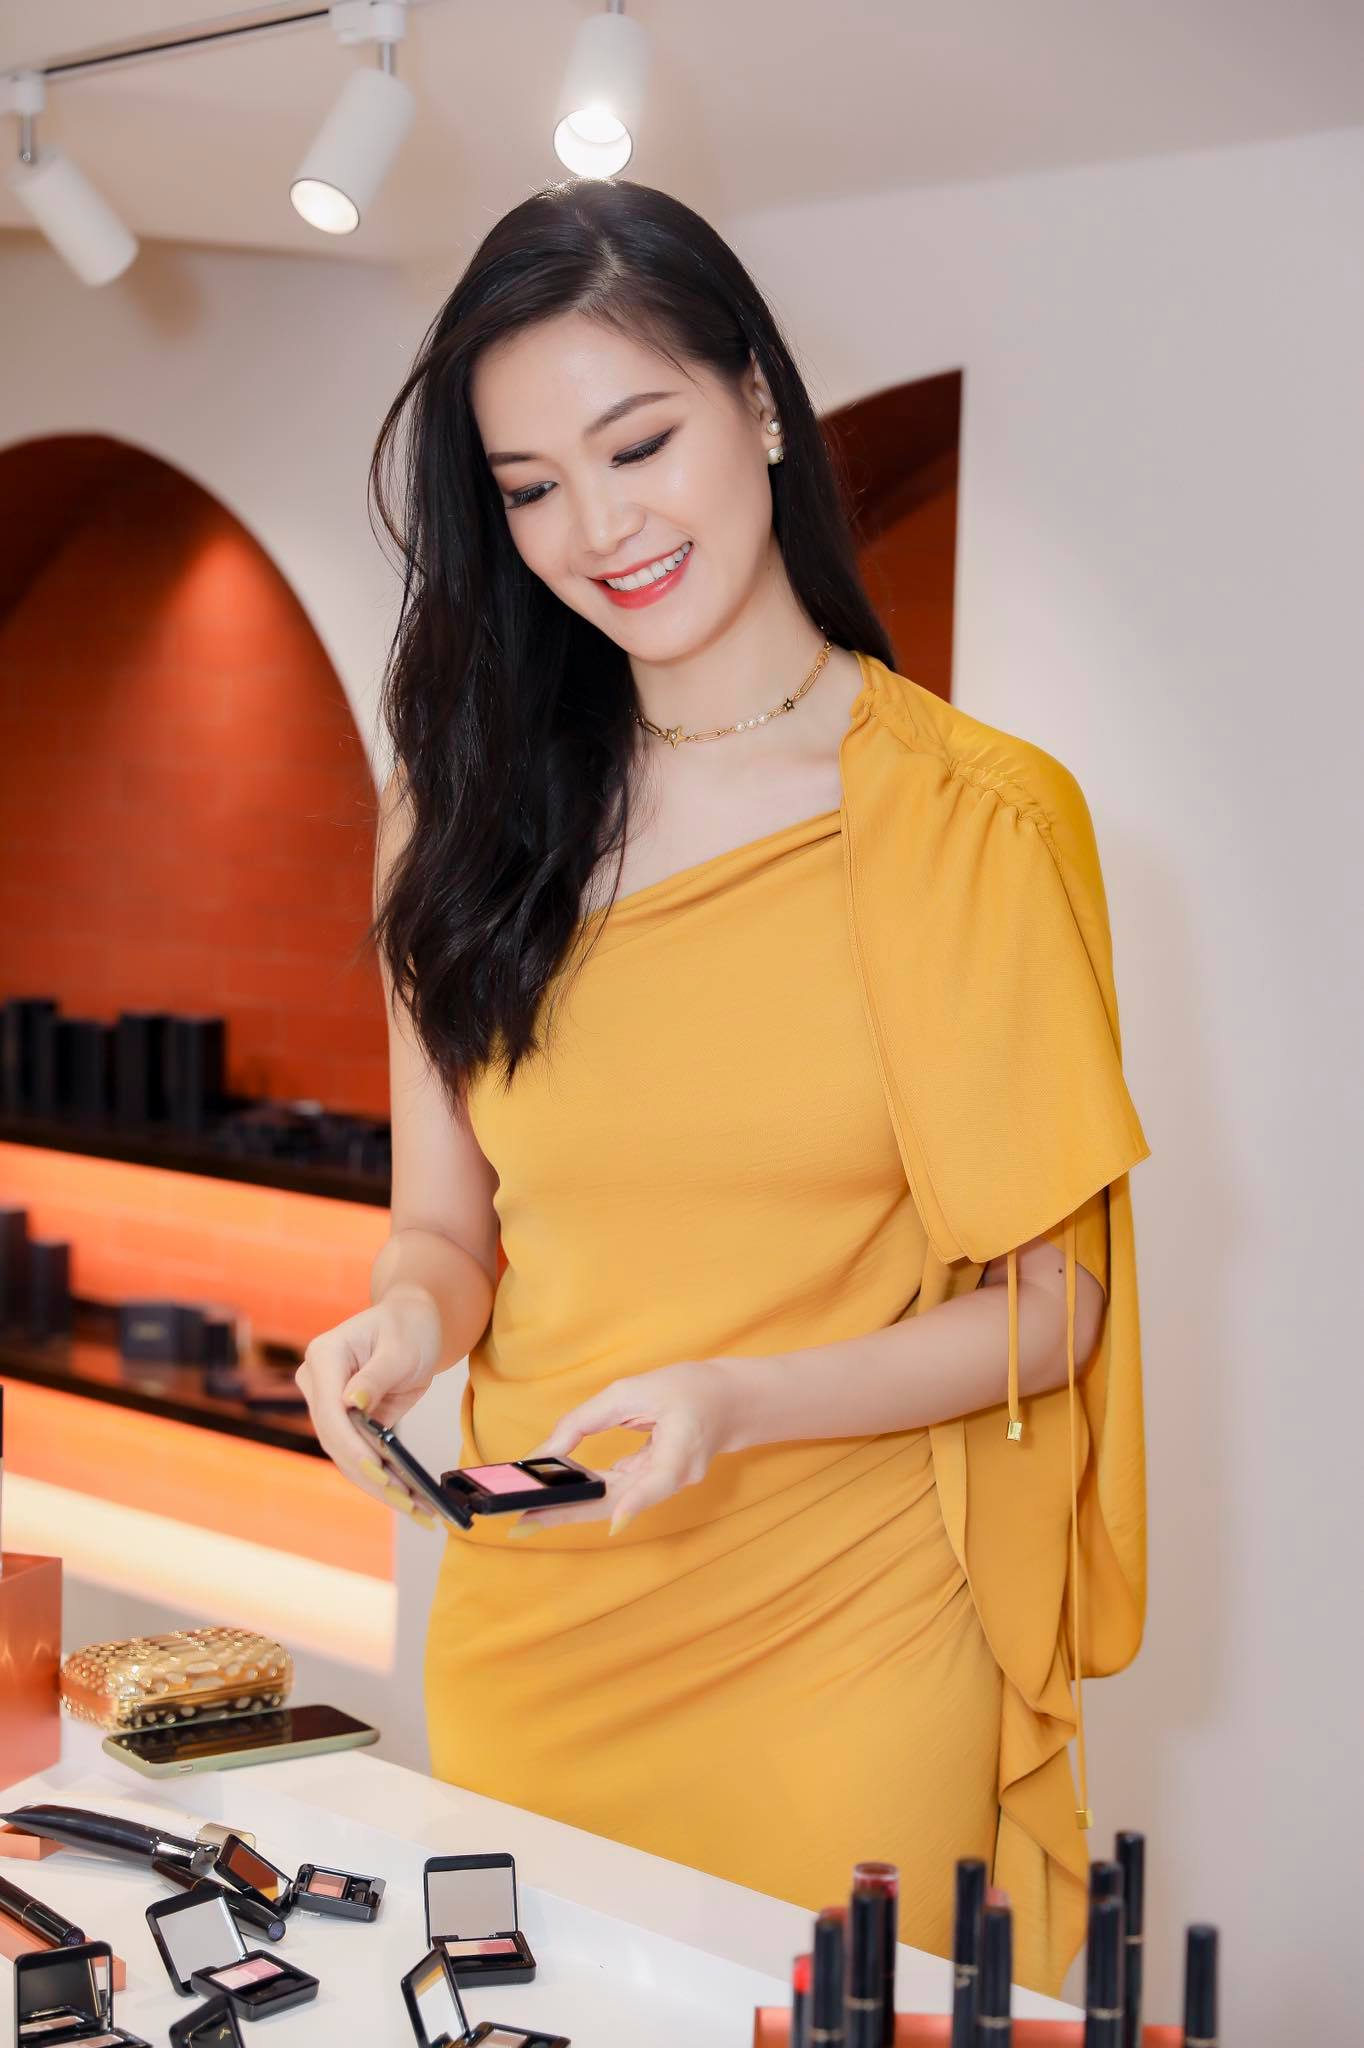 Cuộc sống của Hoa hậu Việt Nam duy nhất bỏ học cấp 3 hiện ra sao? - Ảnh 11